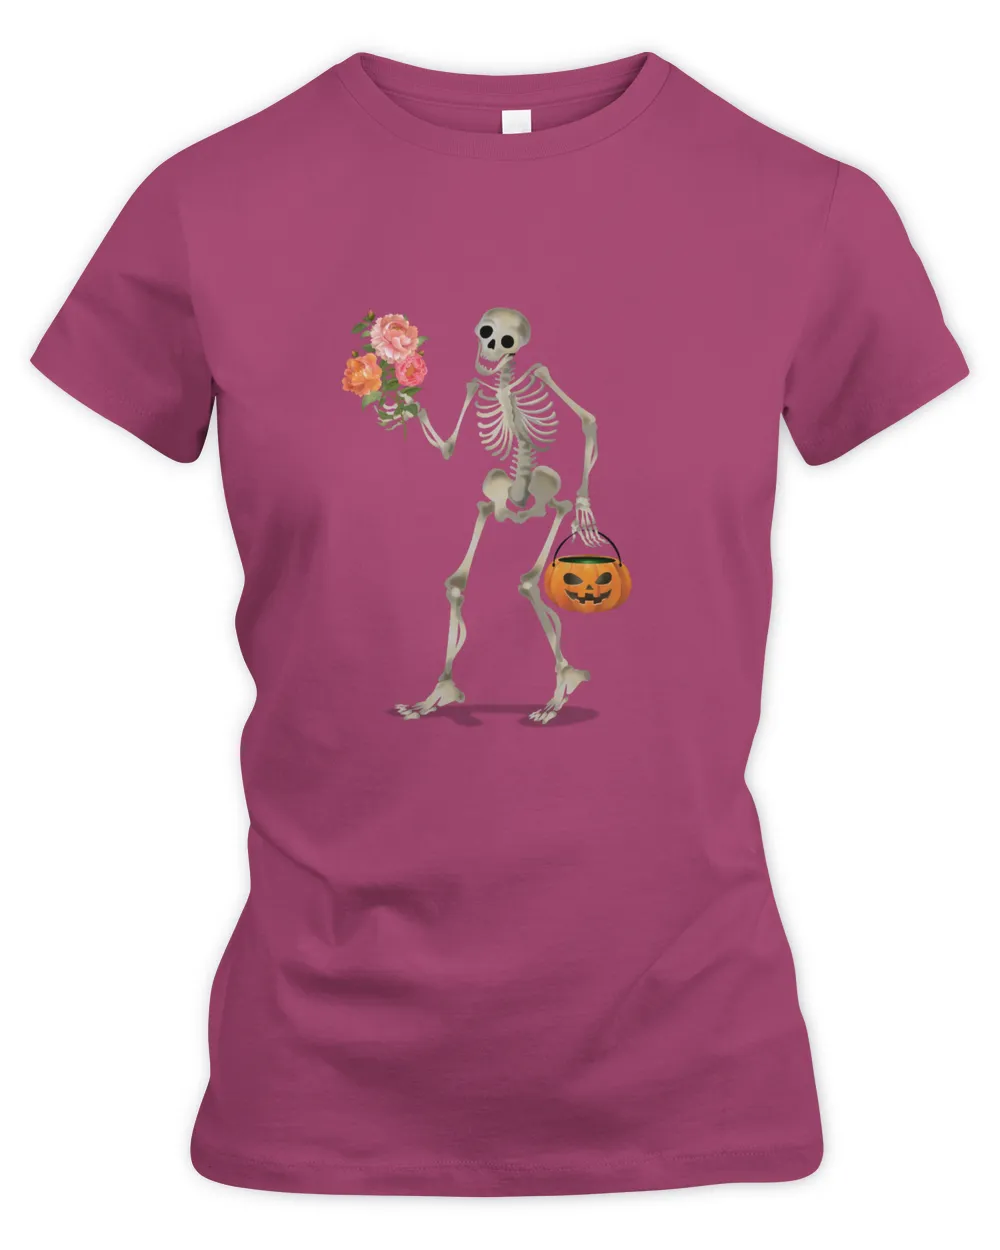 Floral Ghost Shirt, pumpkin skeleton flowers Women's Premium Slim Fit Tee